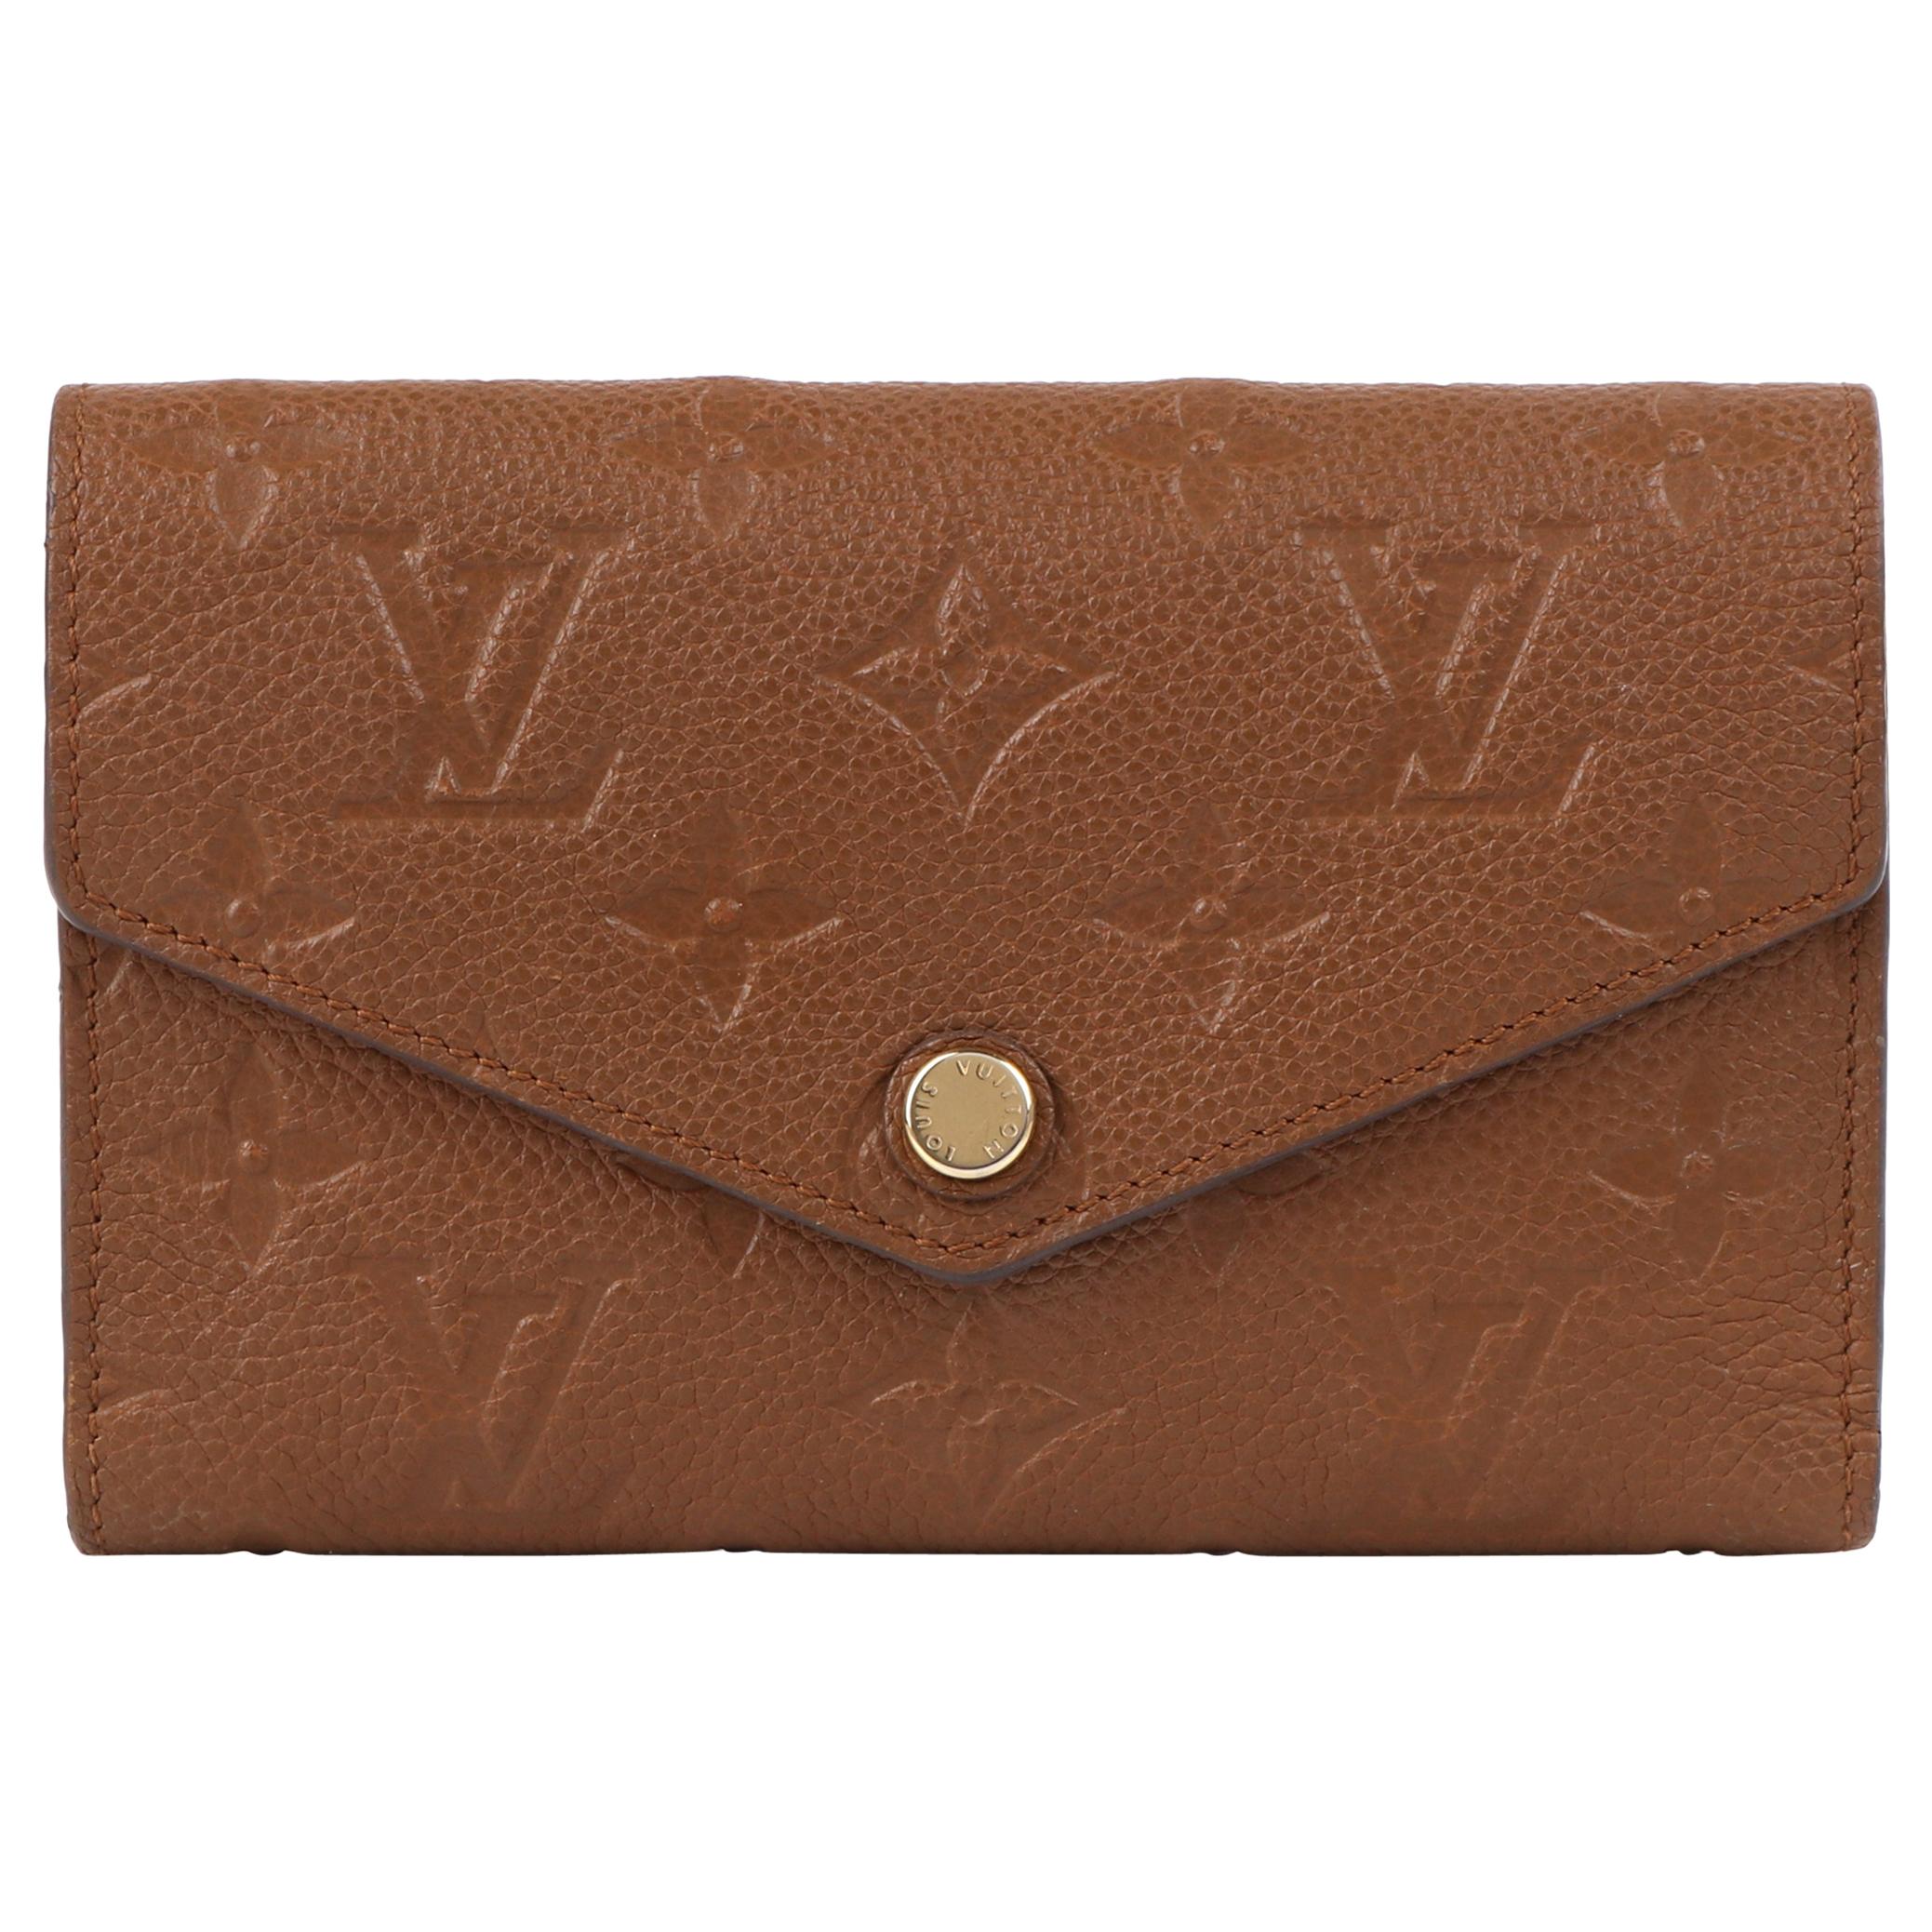 LOUIS VUITTON 2013 "Curieuse" Havane Empreinte Leather Trifold Compact Wallet